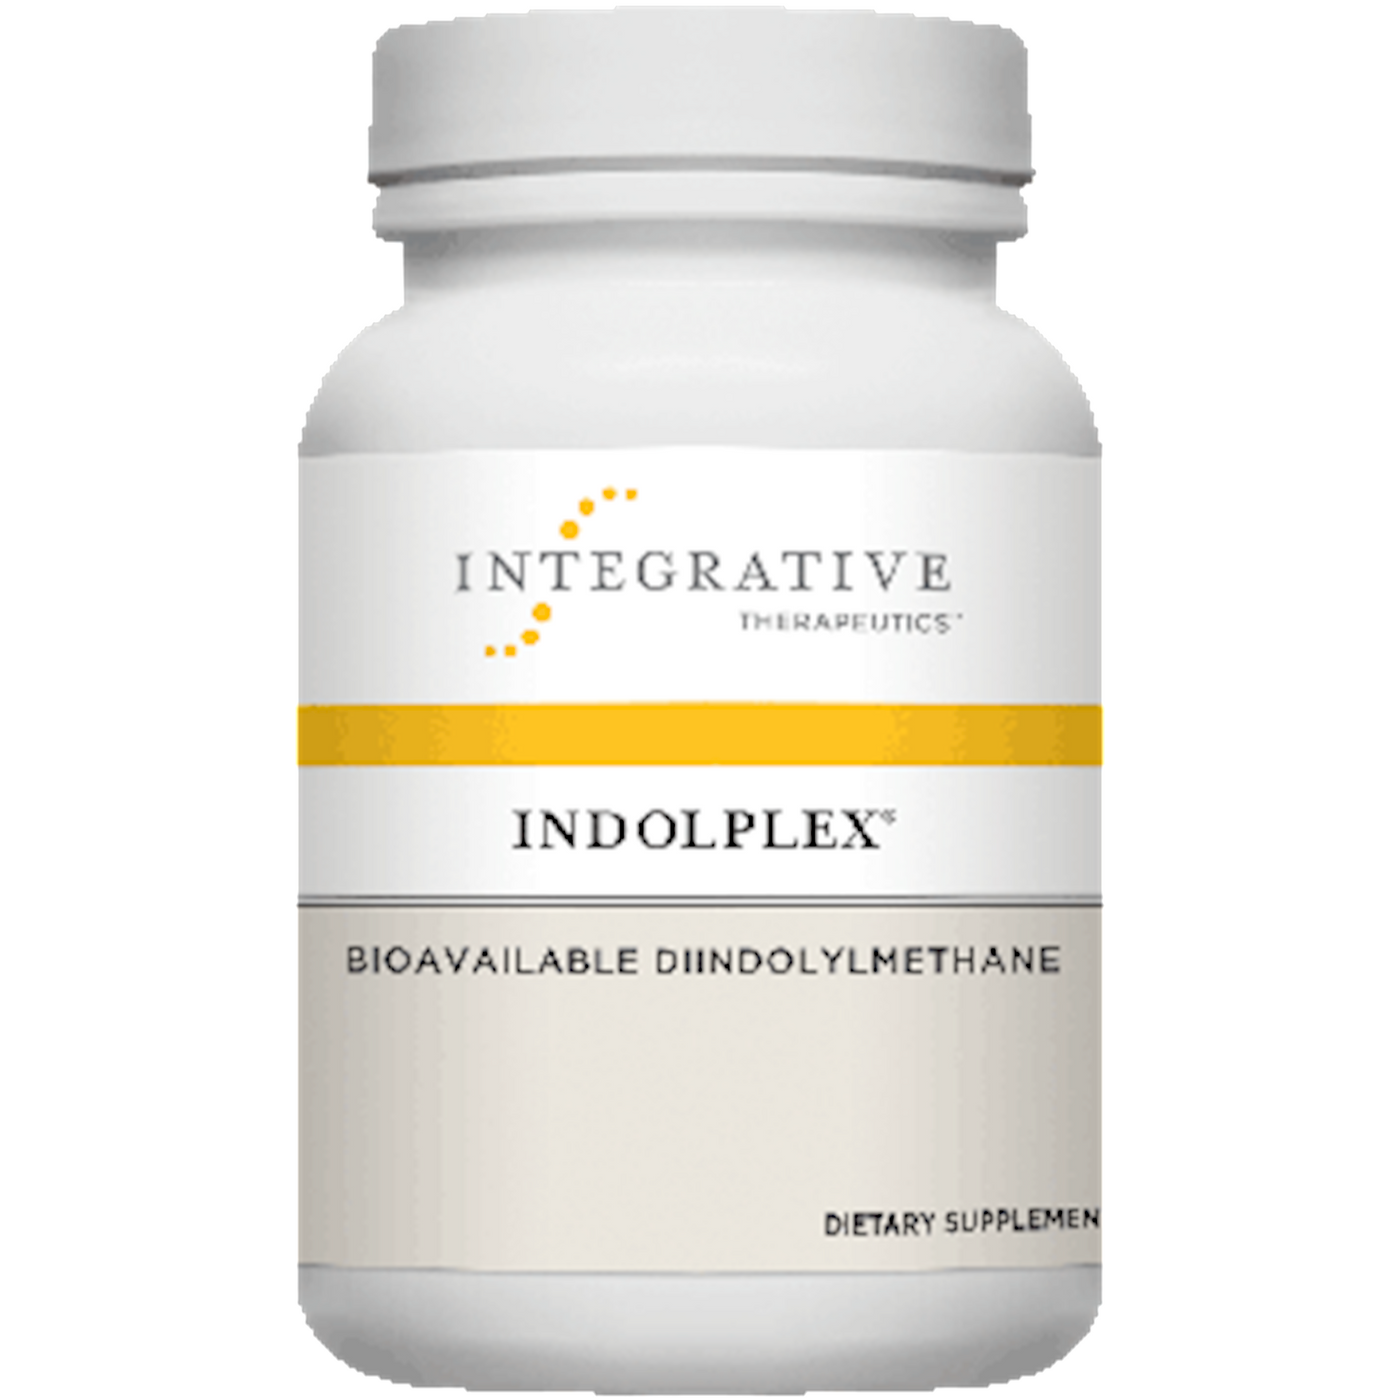 Indolplex 60 caps Curated Wellness